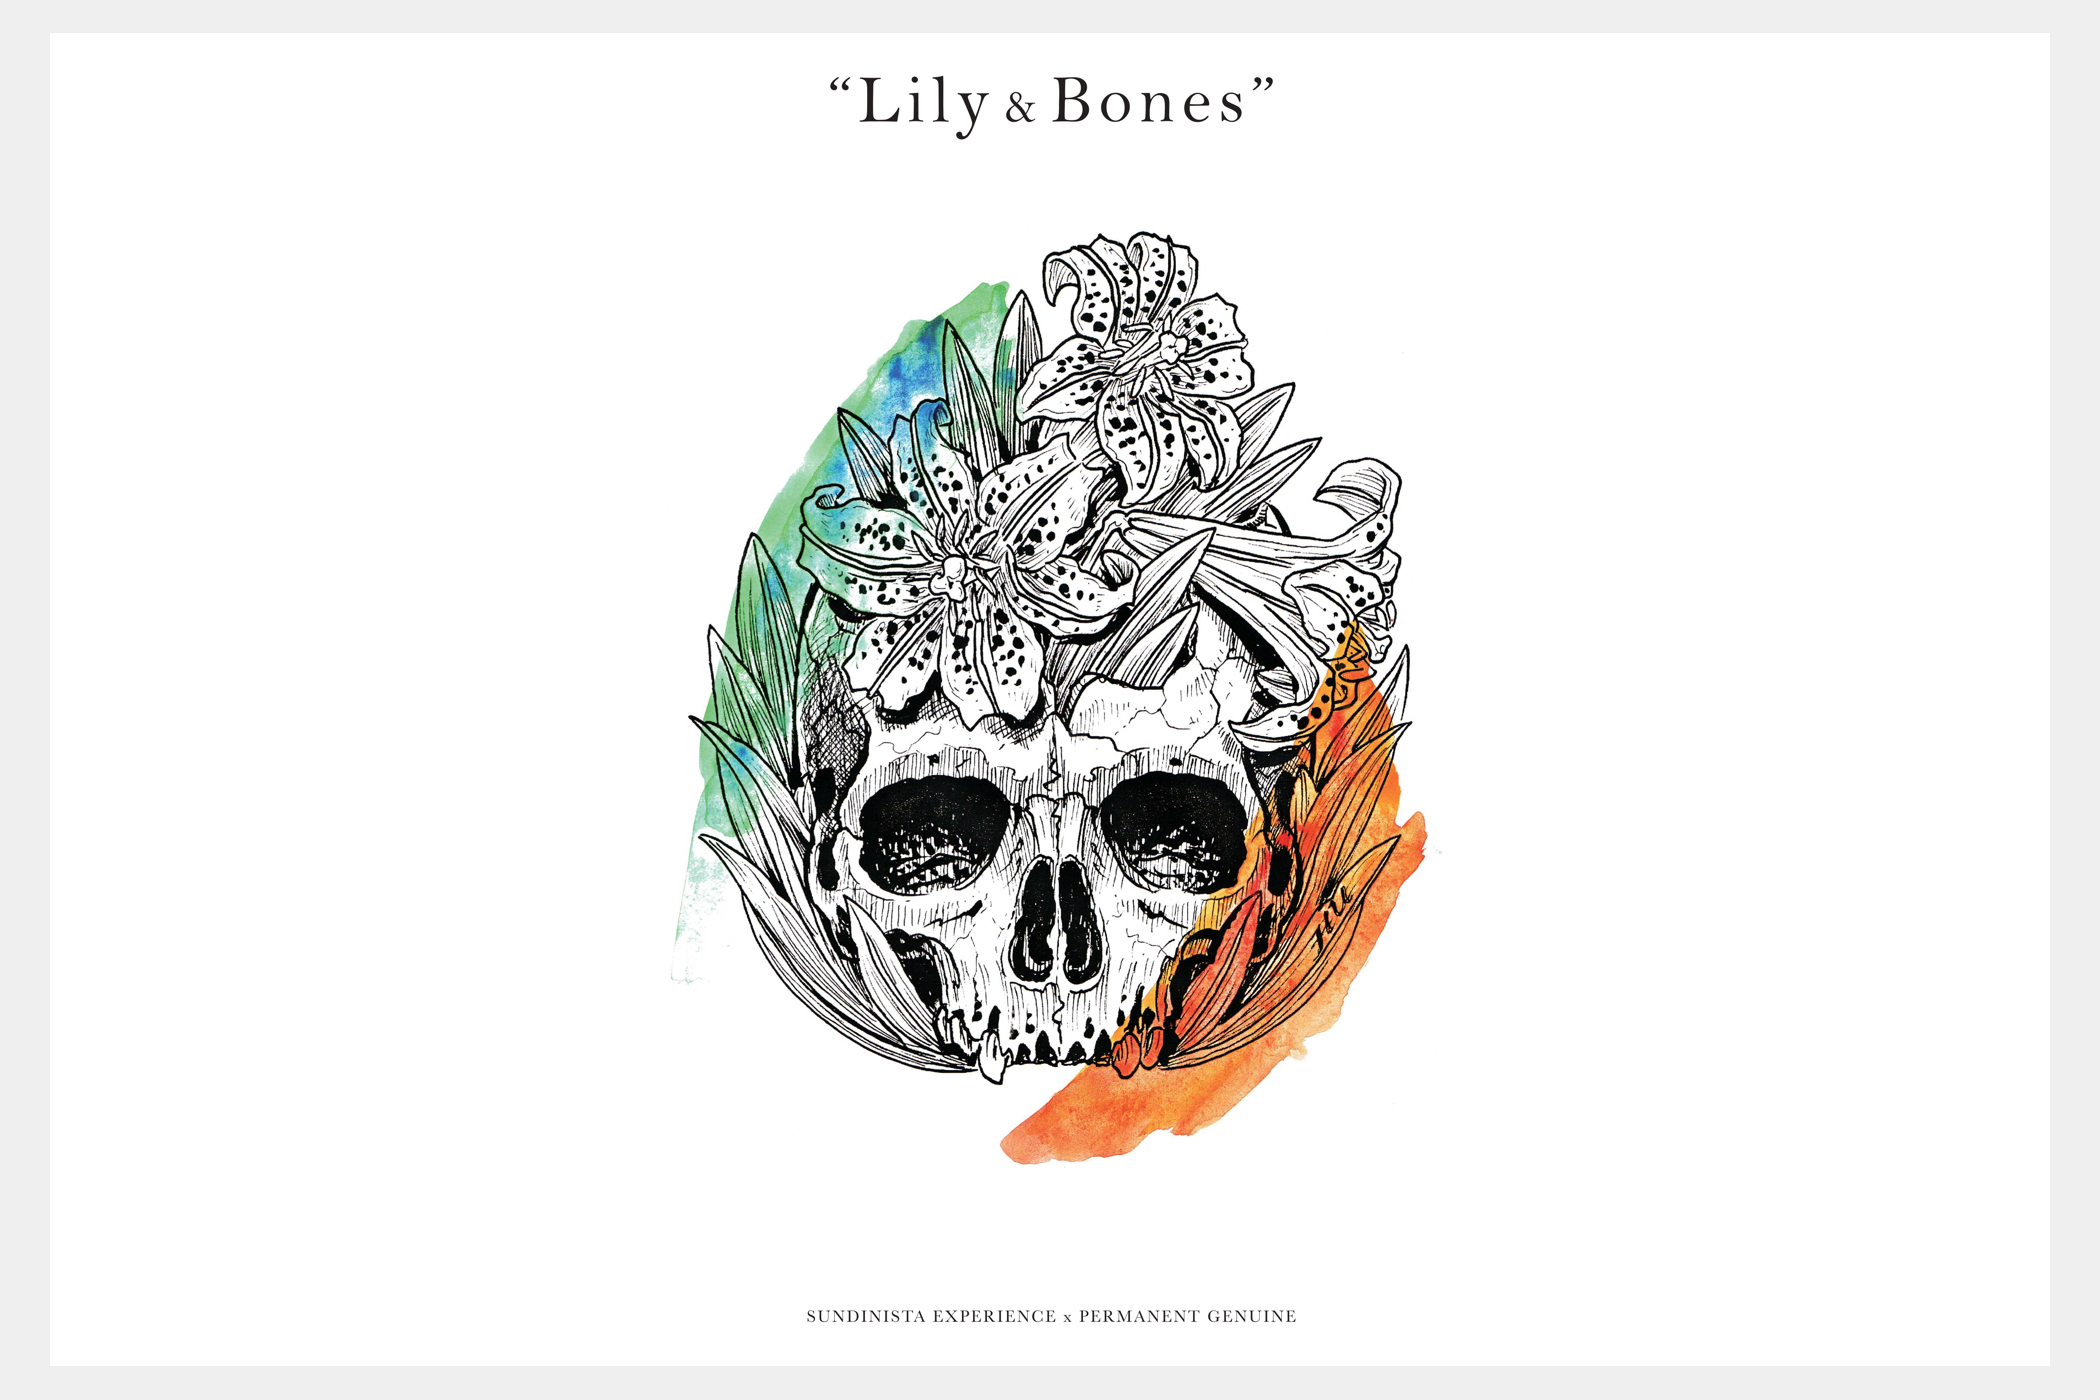 Lily & Bones